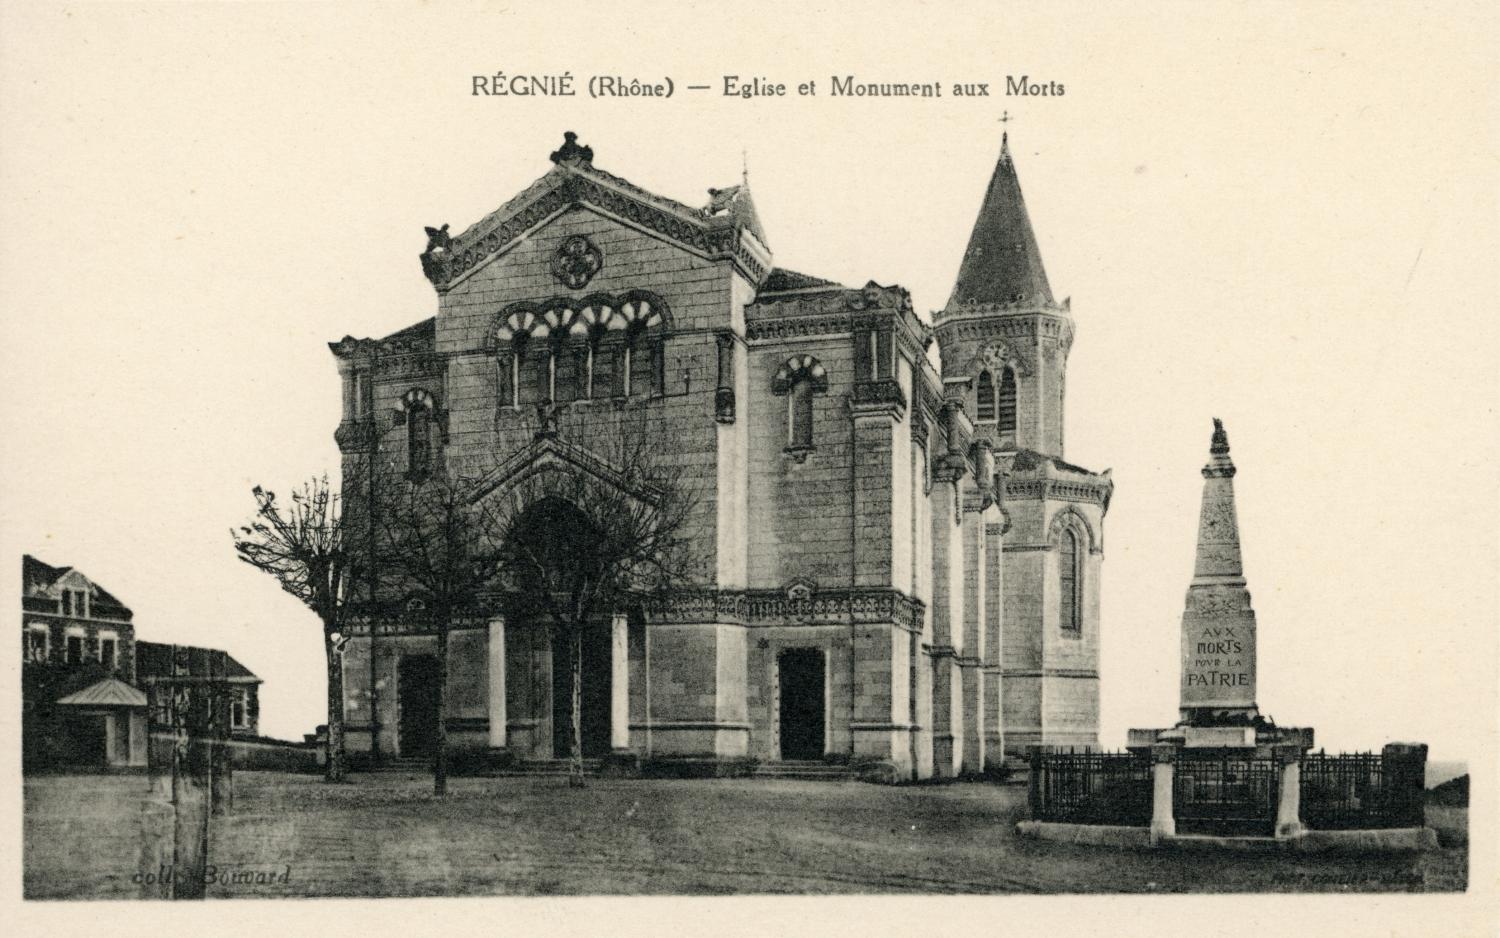 Régnié (Rhône). - Eglise et Monument aux Morts